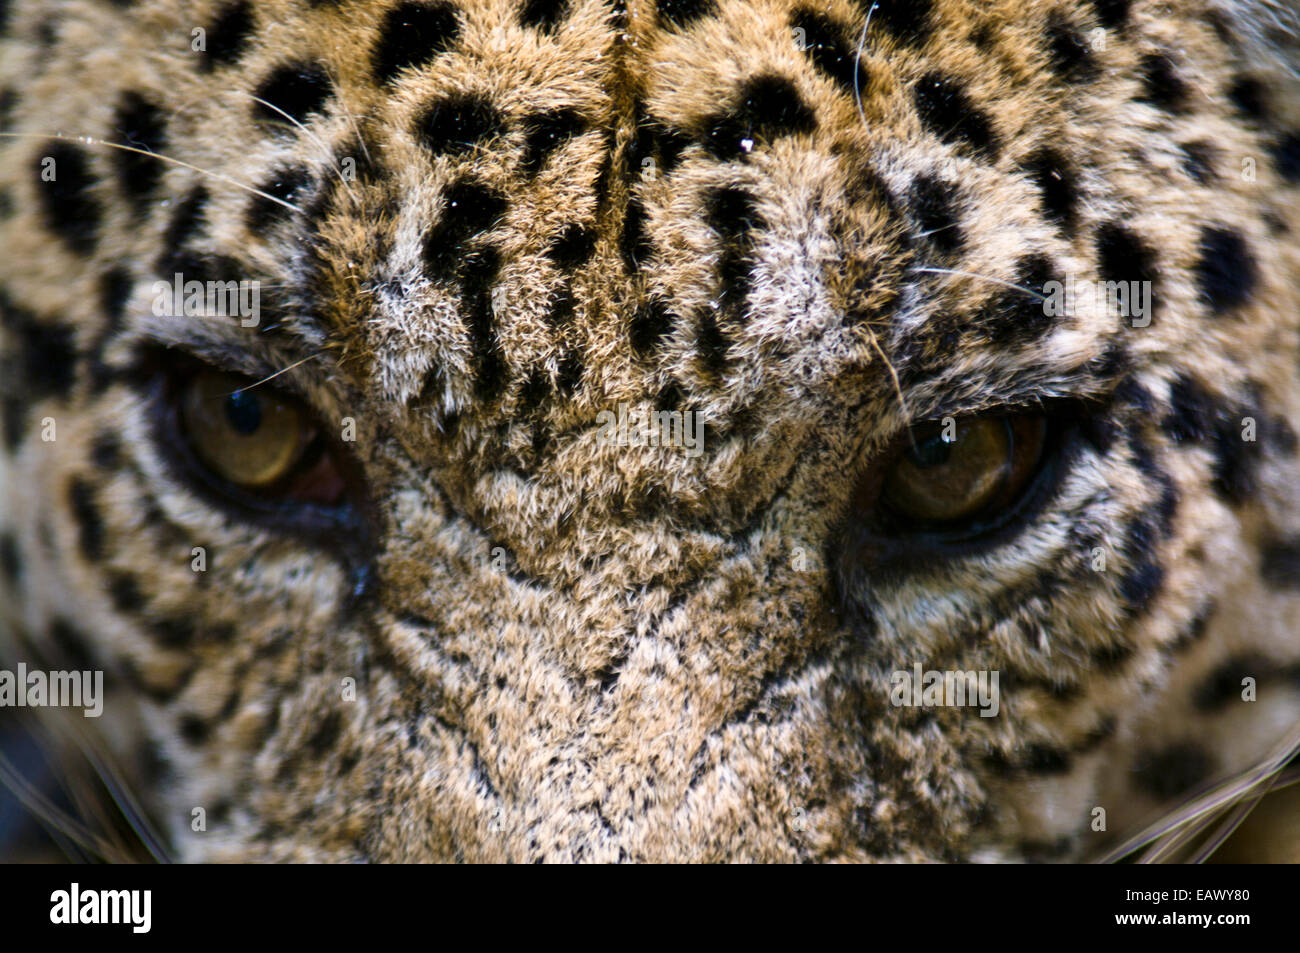 Il sguardo minaccioso di una Jaguar, la top predatore della foresta pluviale amazzonica. Foto Stock